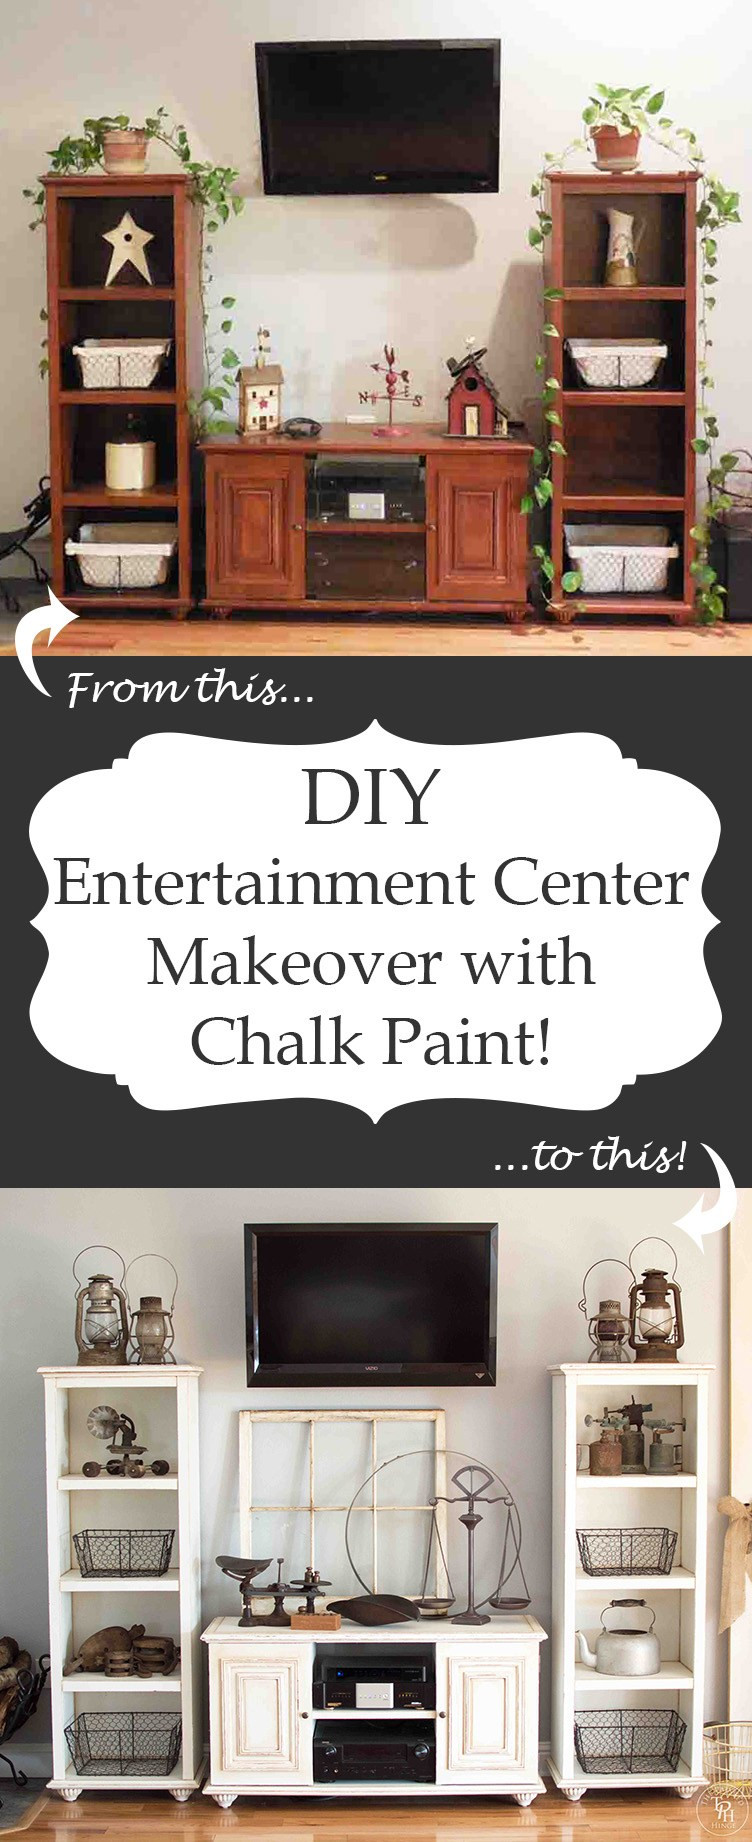 Best ideas about DIY Entertainment Center
. Save or Pin DIY Entertainment Center Makeover with Chalk Paint Now.